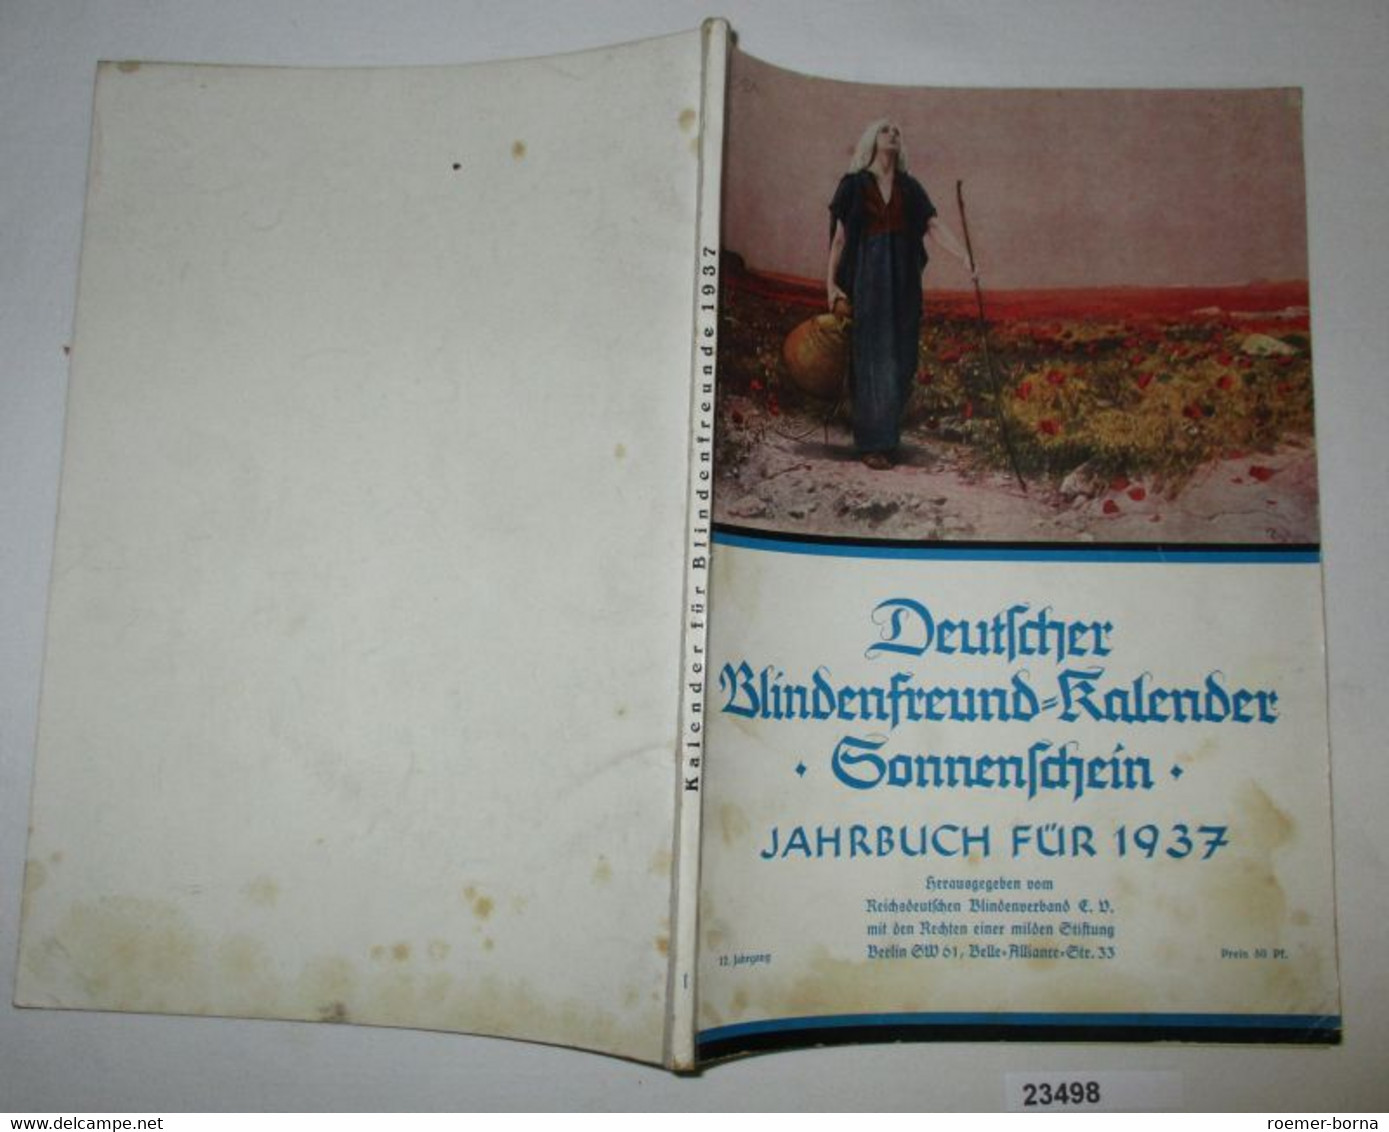 Deutscher Blindenfreund-Kalender "Sonnenschein" Jahrbuch Für 1937 - Kalender